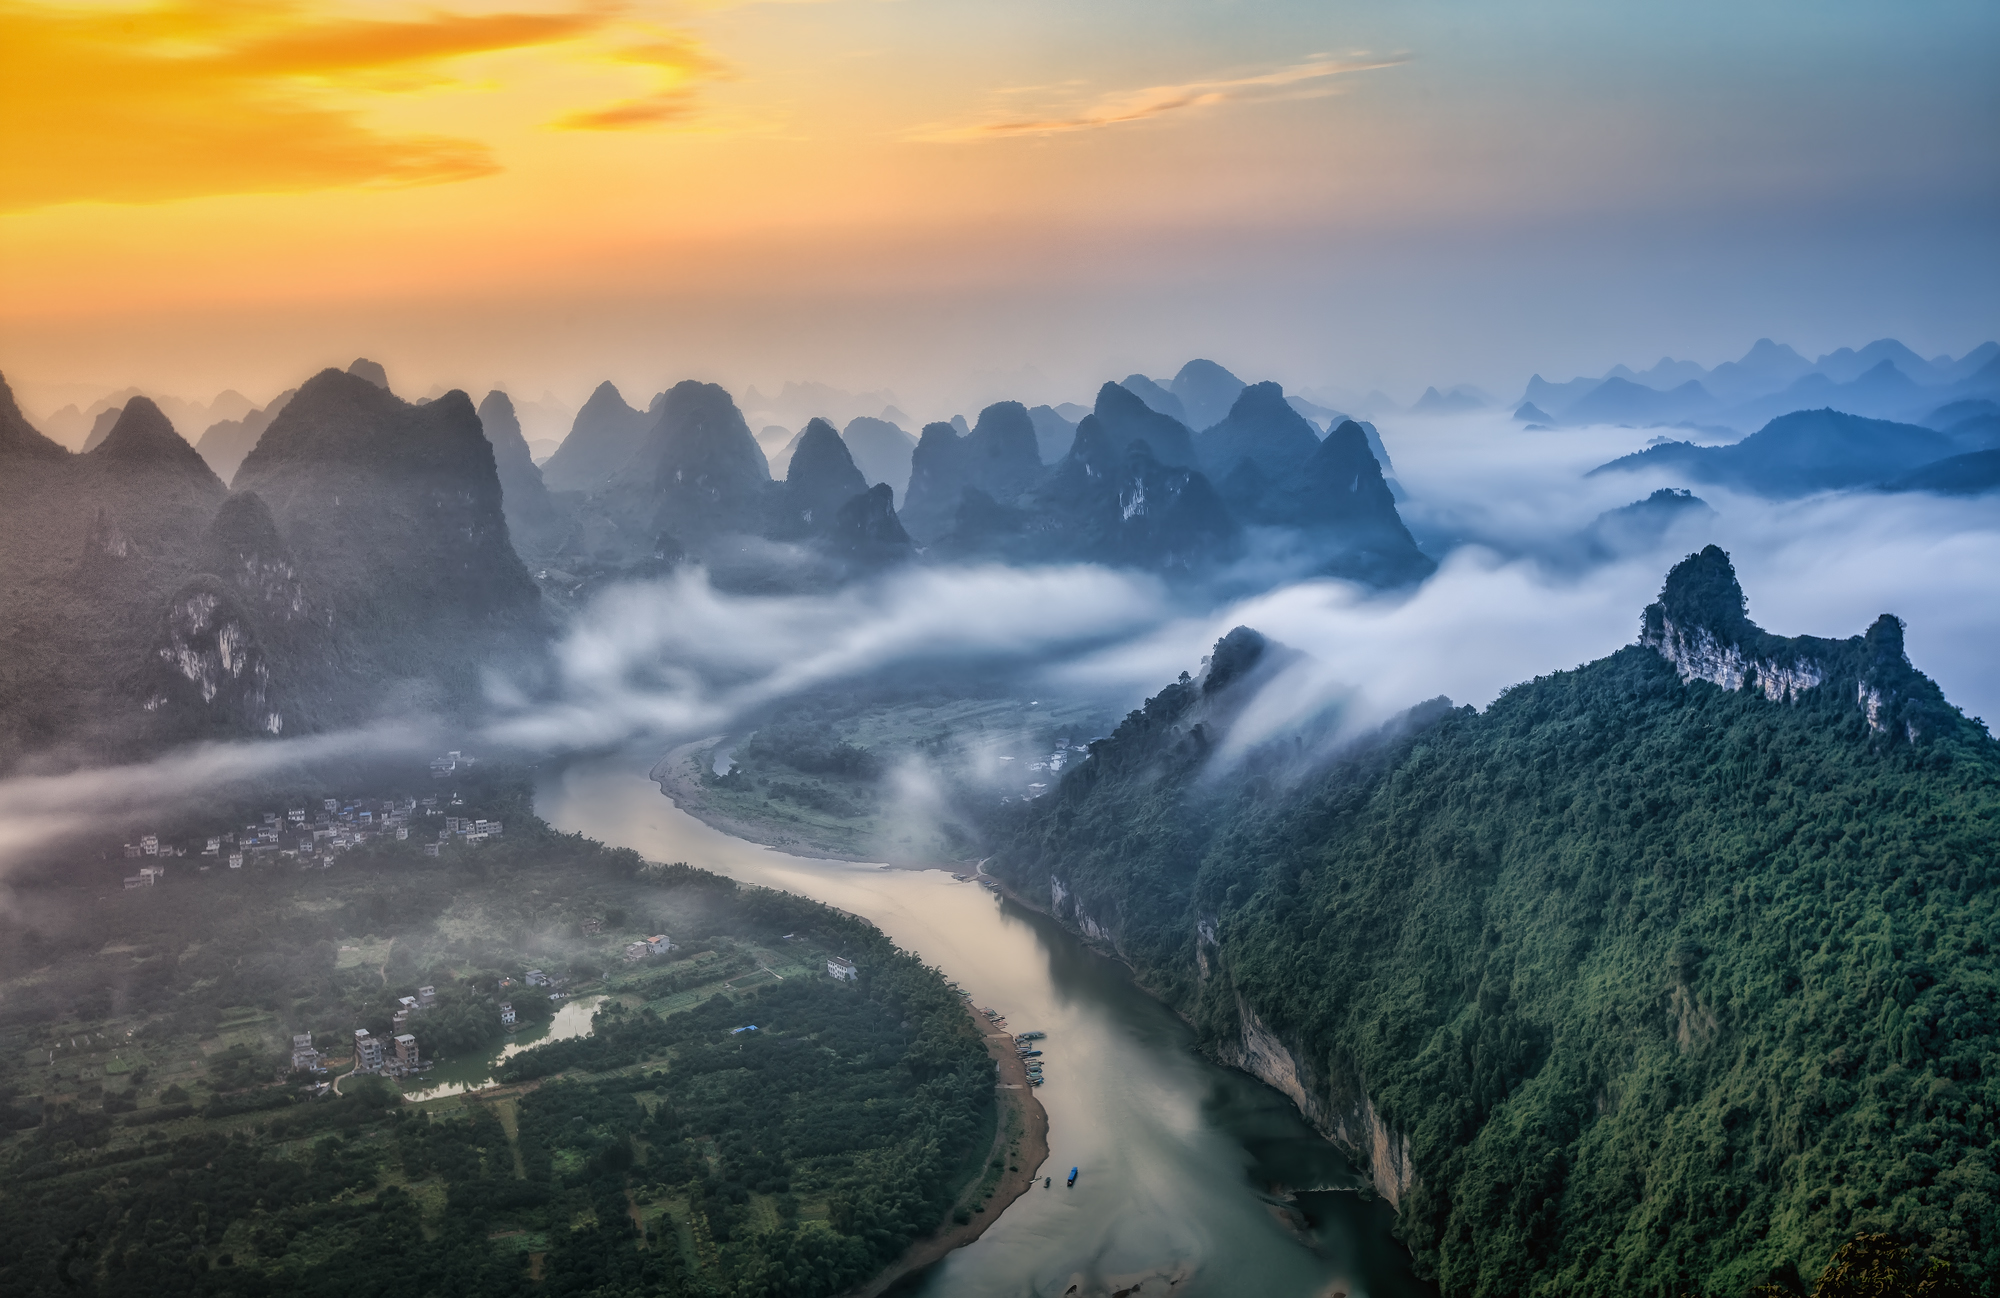 桂林最高的山图片